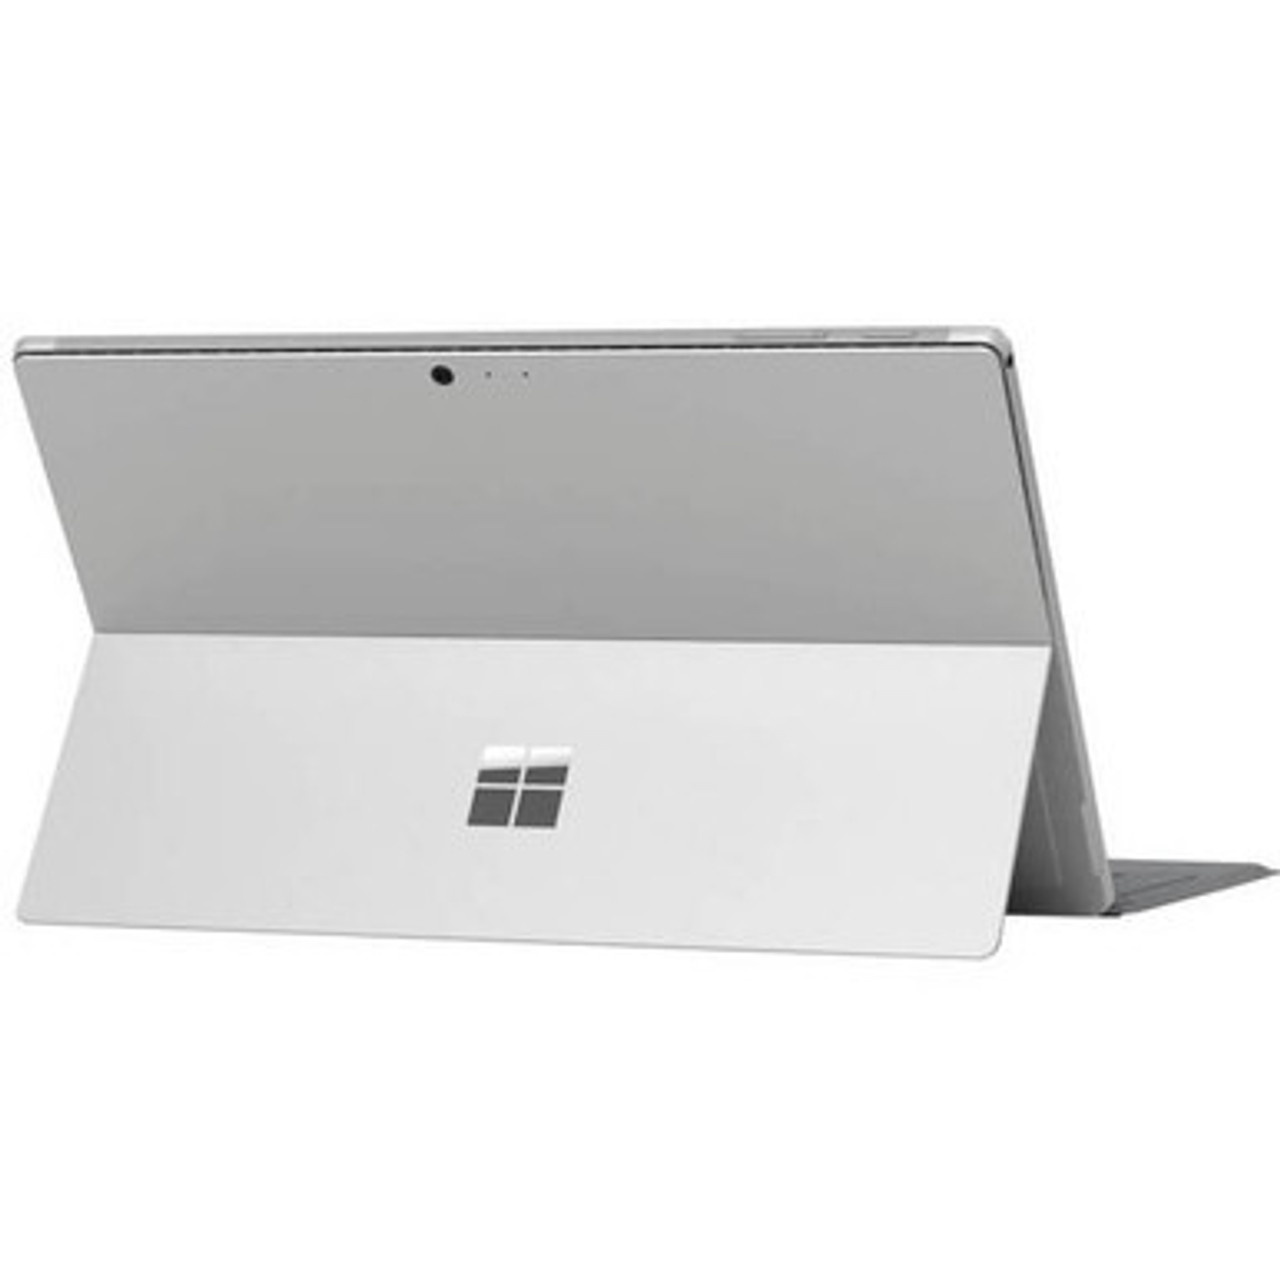 Microsoft Surface Pro 5 1796 Intel Core M3-7Y30 1.00GHZ 4GB RAM 128GB  Silver #1